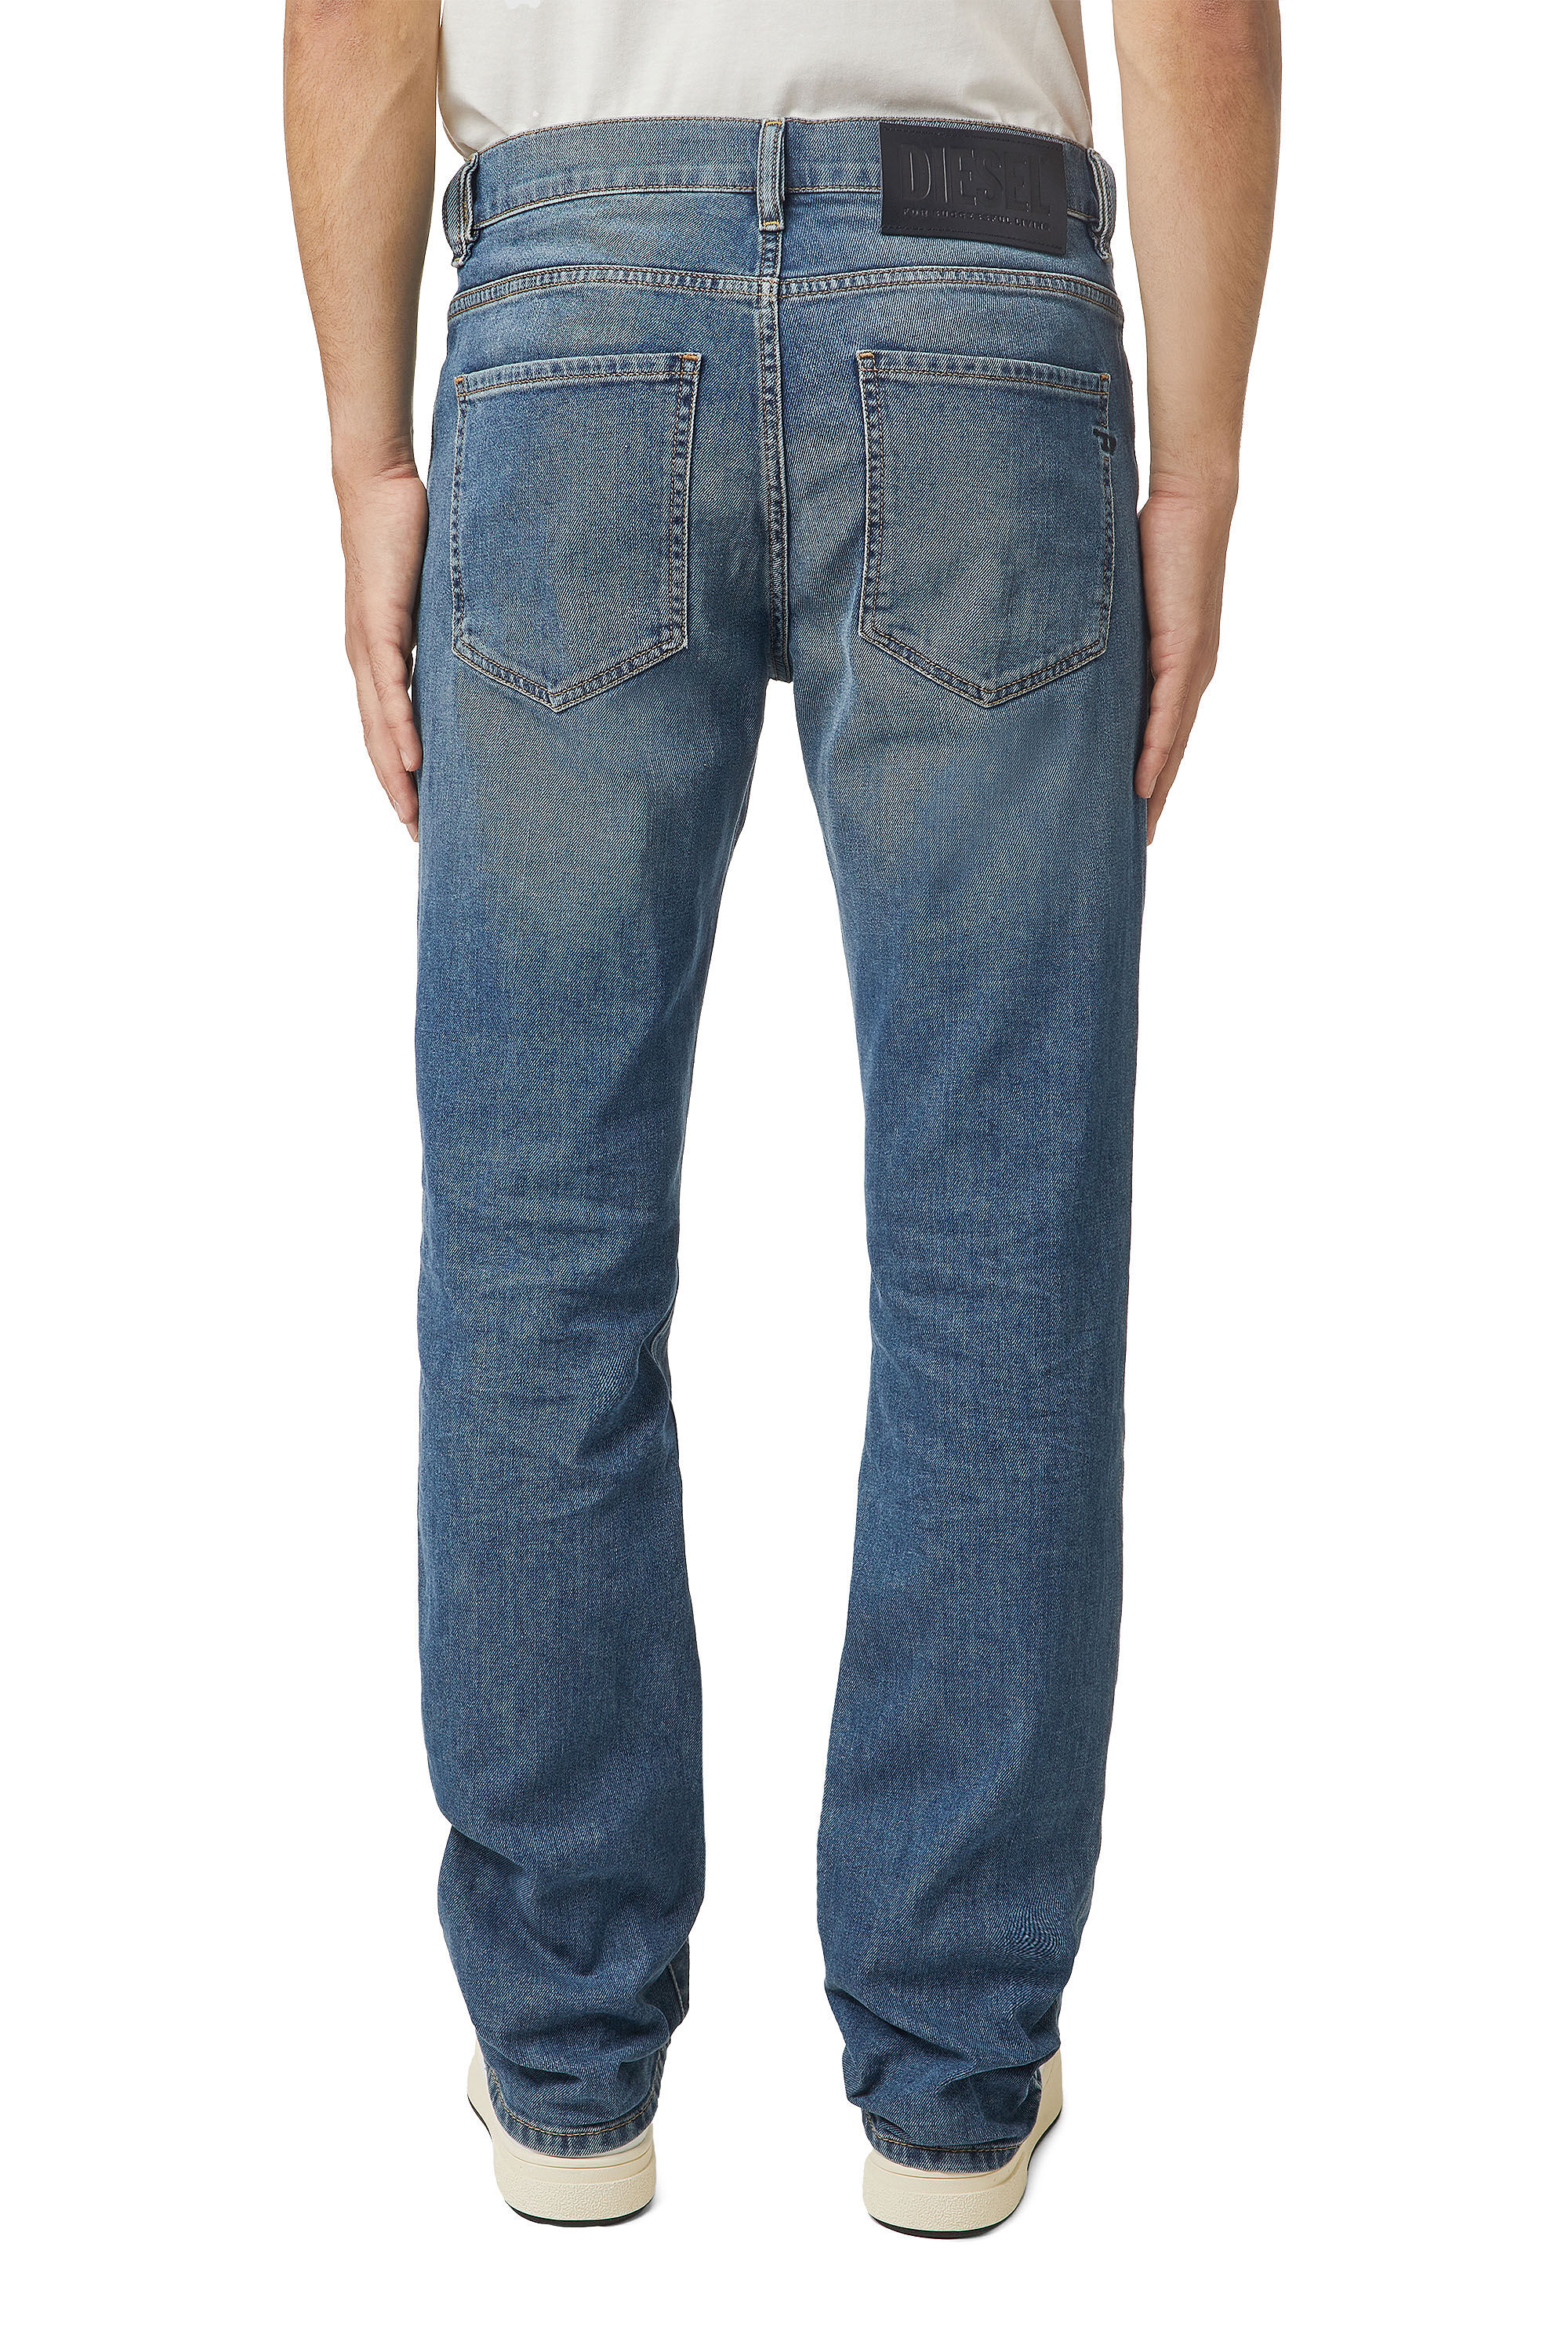 Diesel - D-Vocs 009EI Bootcut Jeans,  - Image 4